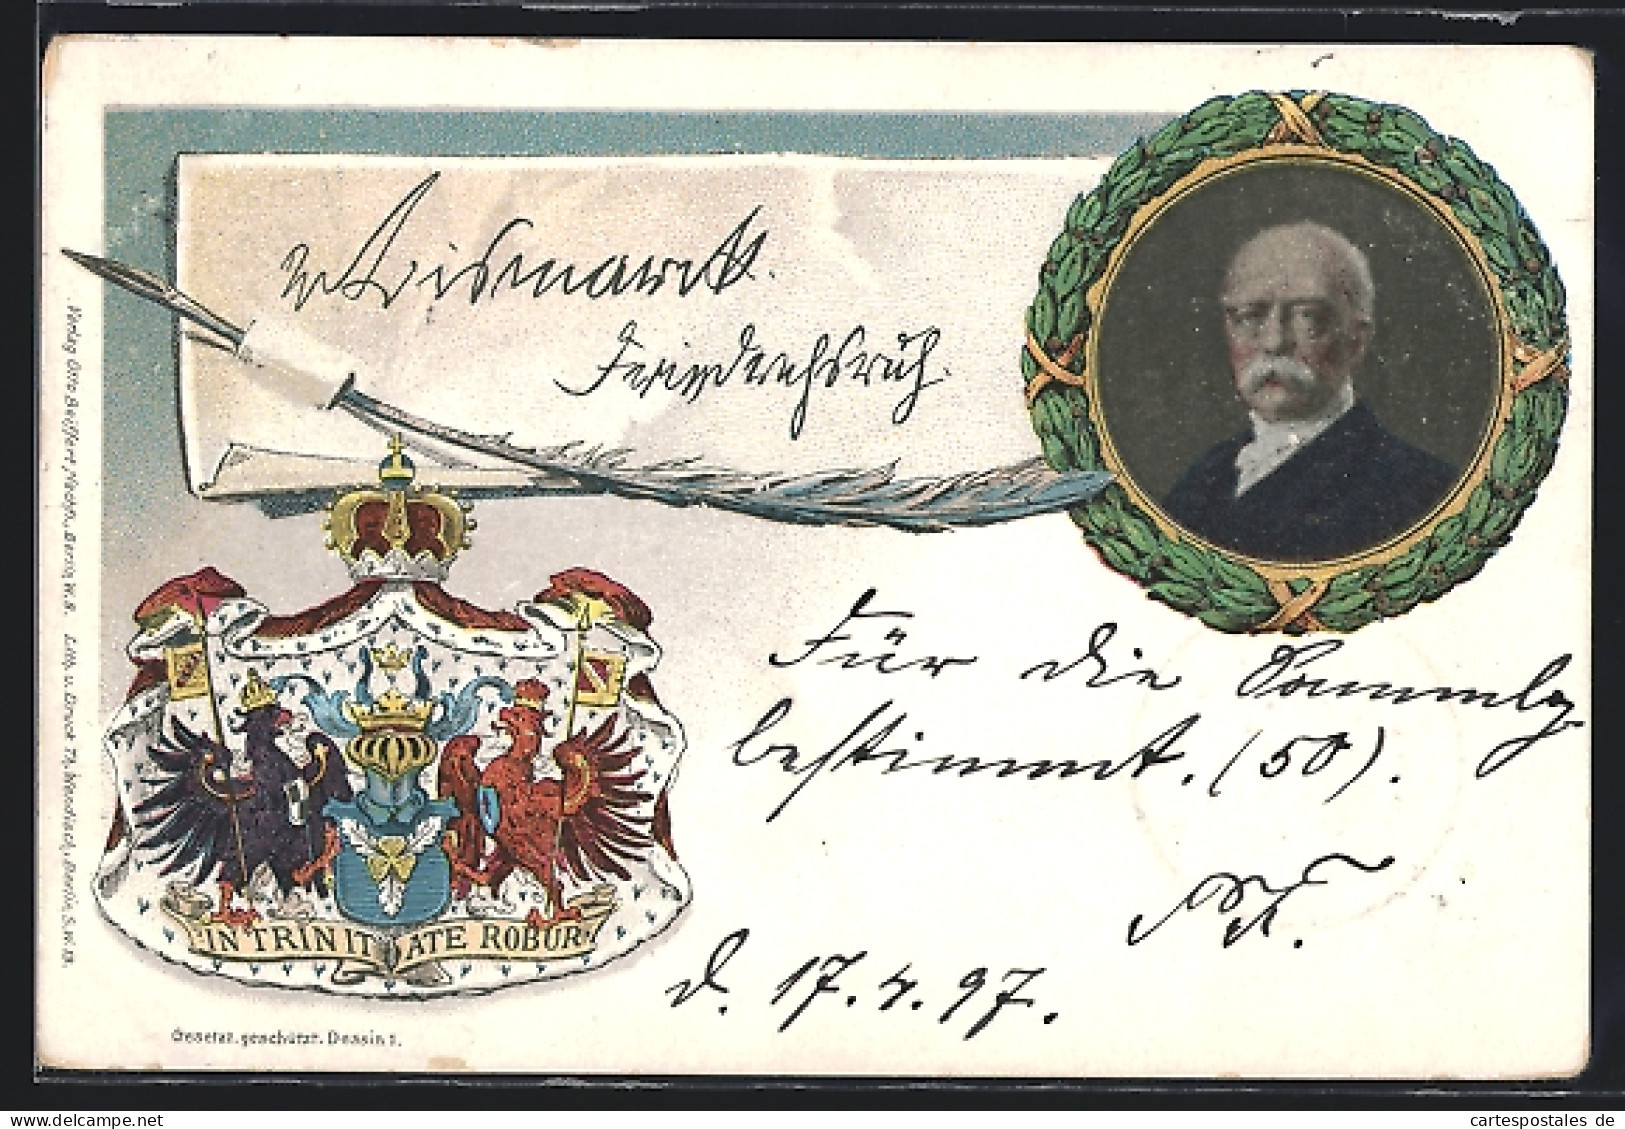 Künstler-AK Portrait Von Bismarck Mit Wappen, Ganzsache  - Historical Famous People